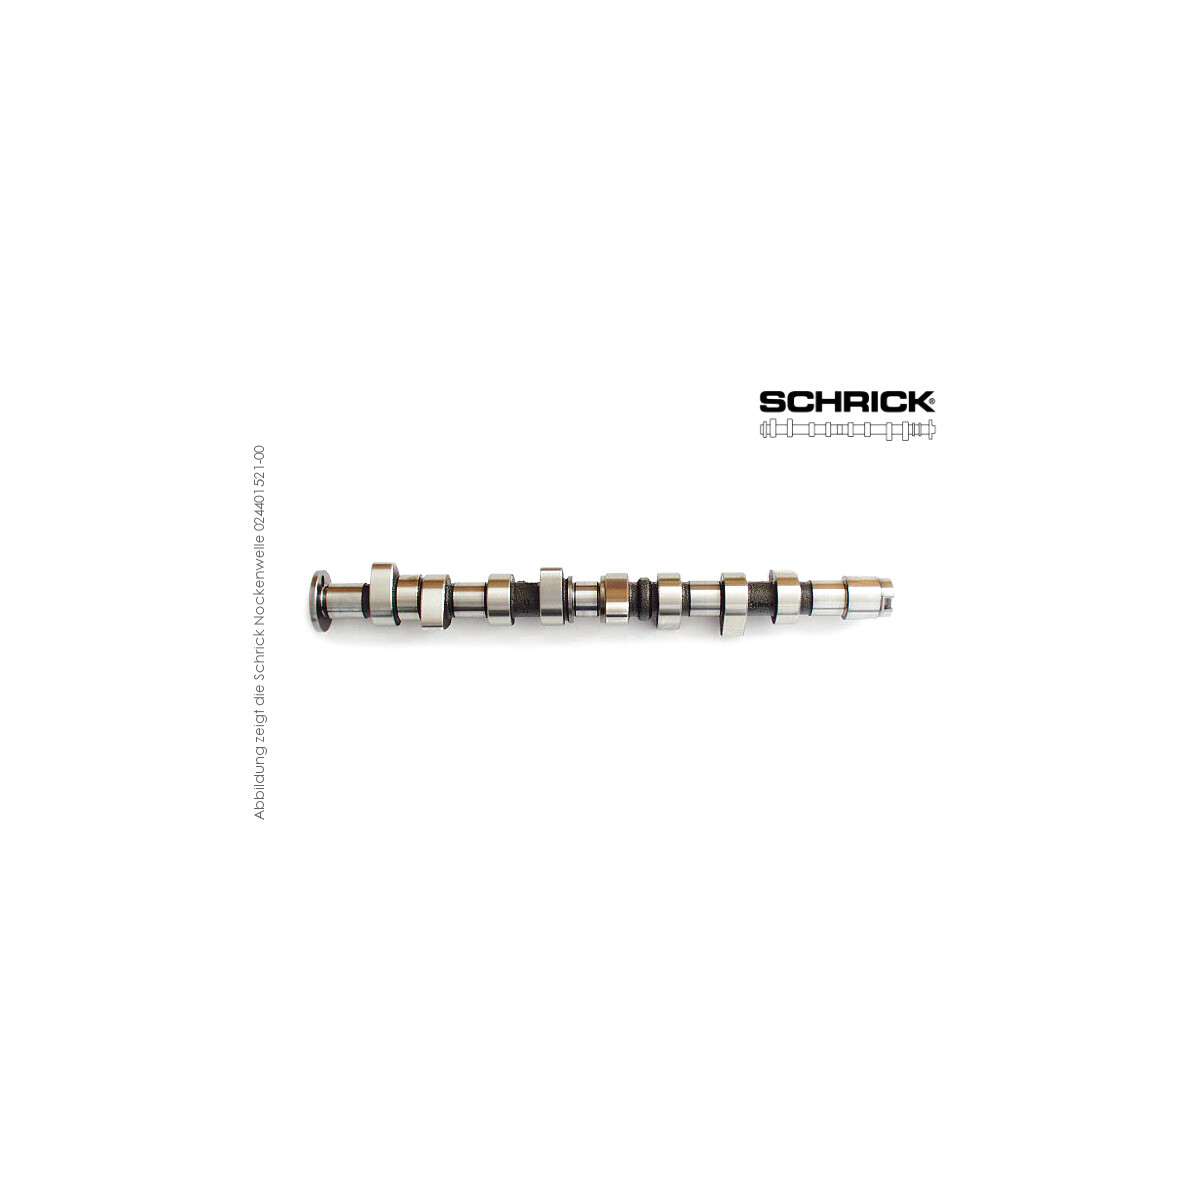 Schrick Nockenwelle für VW Polo | 1,4-1,6L 16V 4-Zyl. , Tassenstössel, 16V | 292° Einlassnockenwelle (Schrick 0299E1920-01)